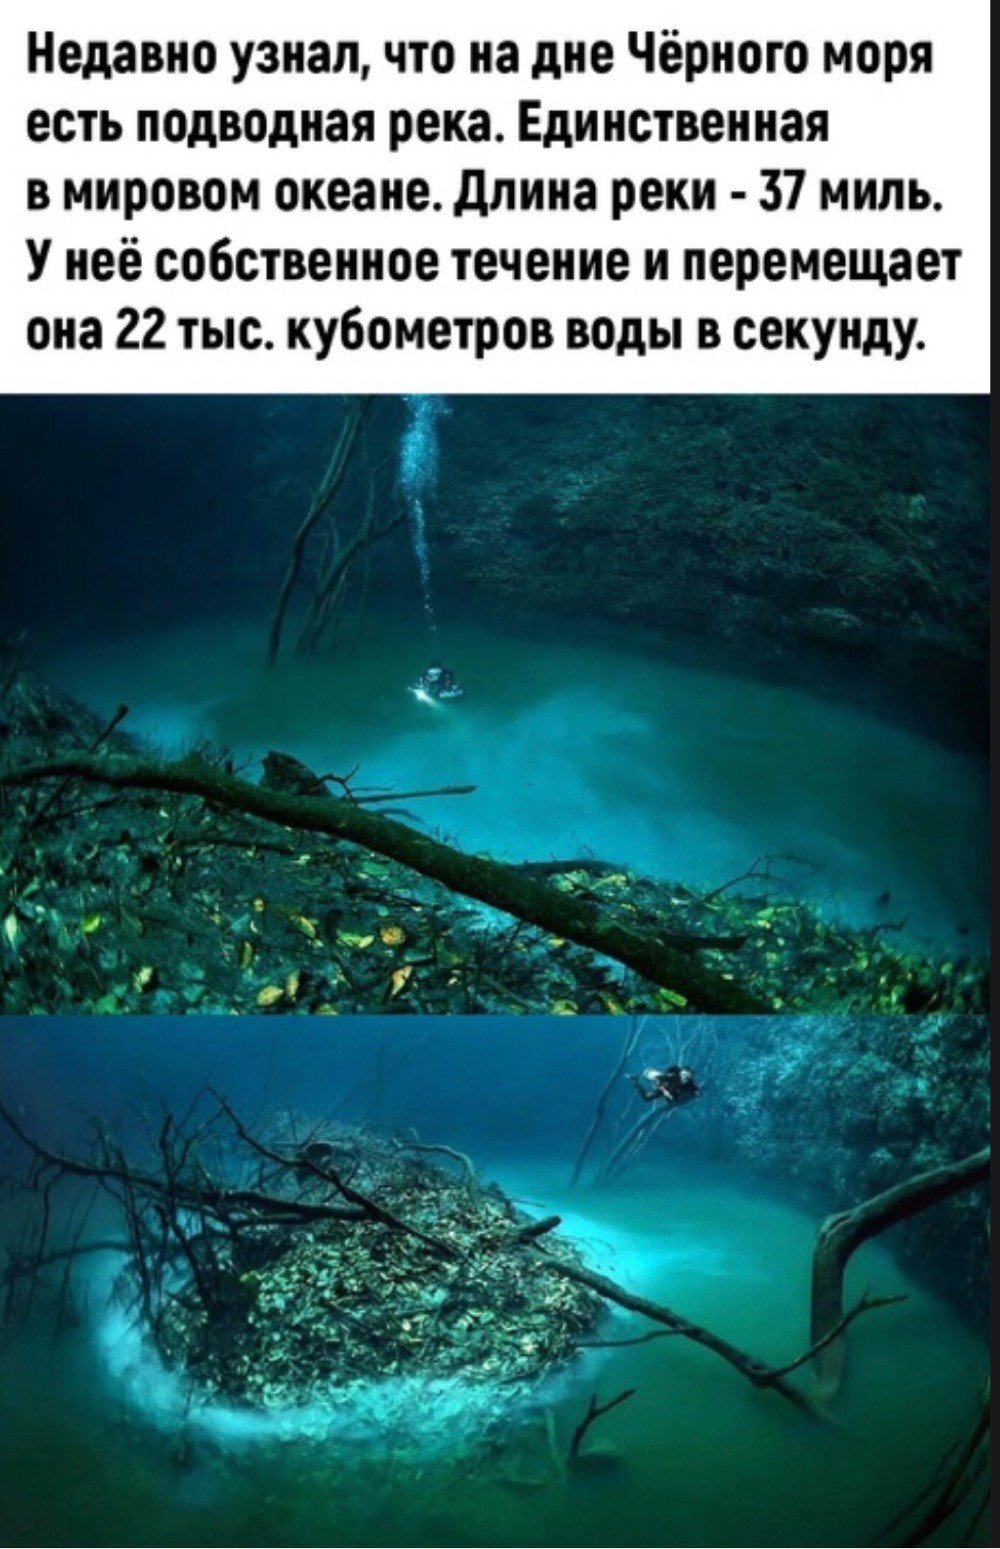 Подводная река в черном море (70 фото)